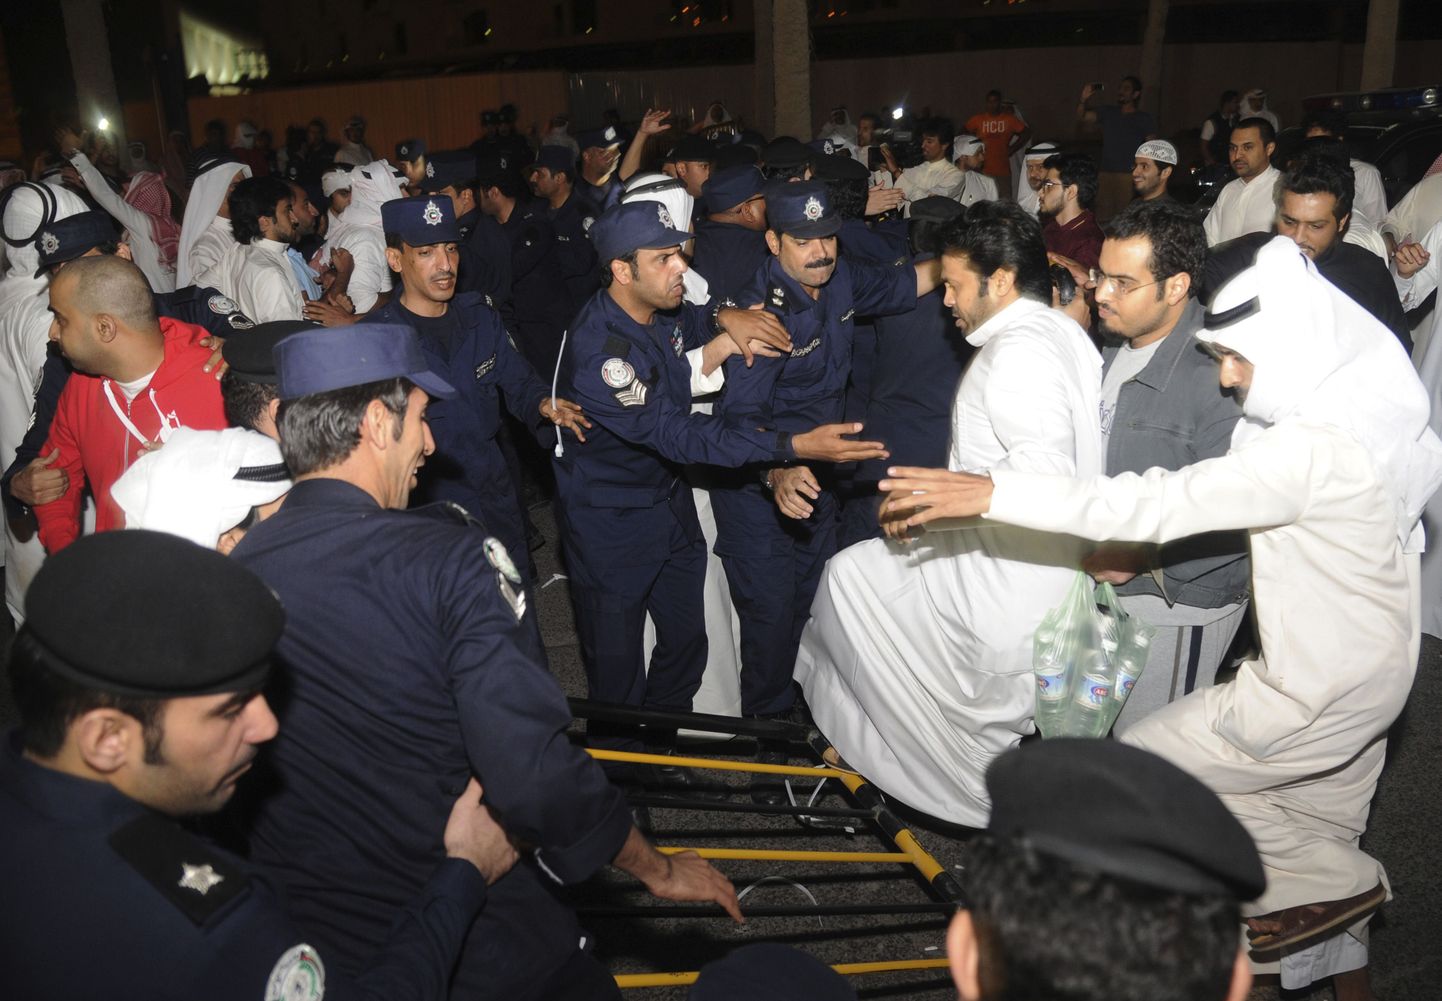 Kümned kuveitlased tungisid parlamendihoonesse.